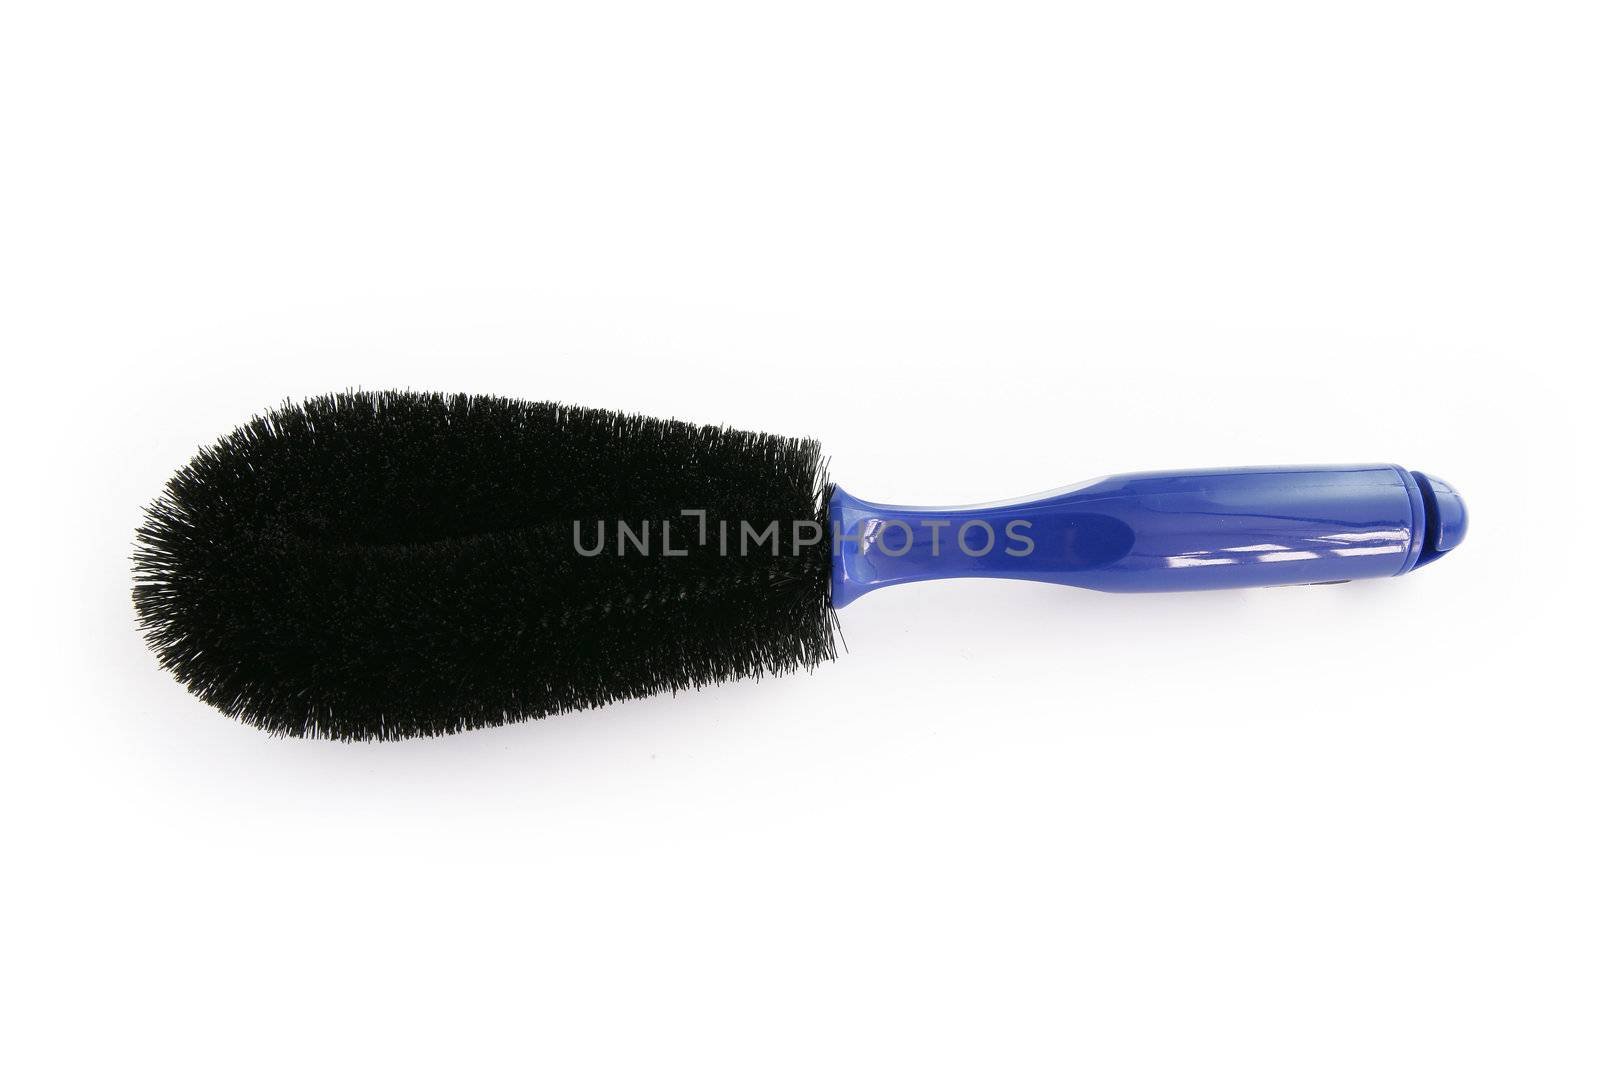 Blue hair brush